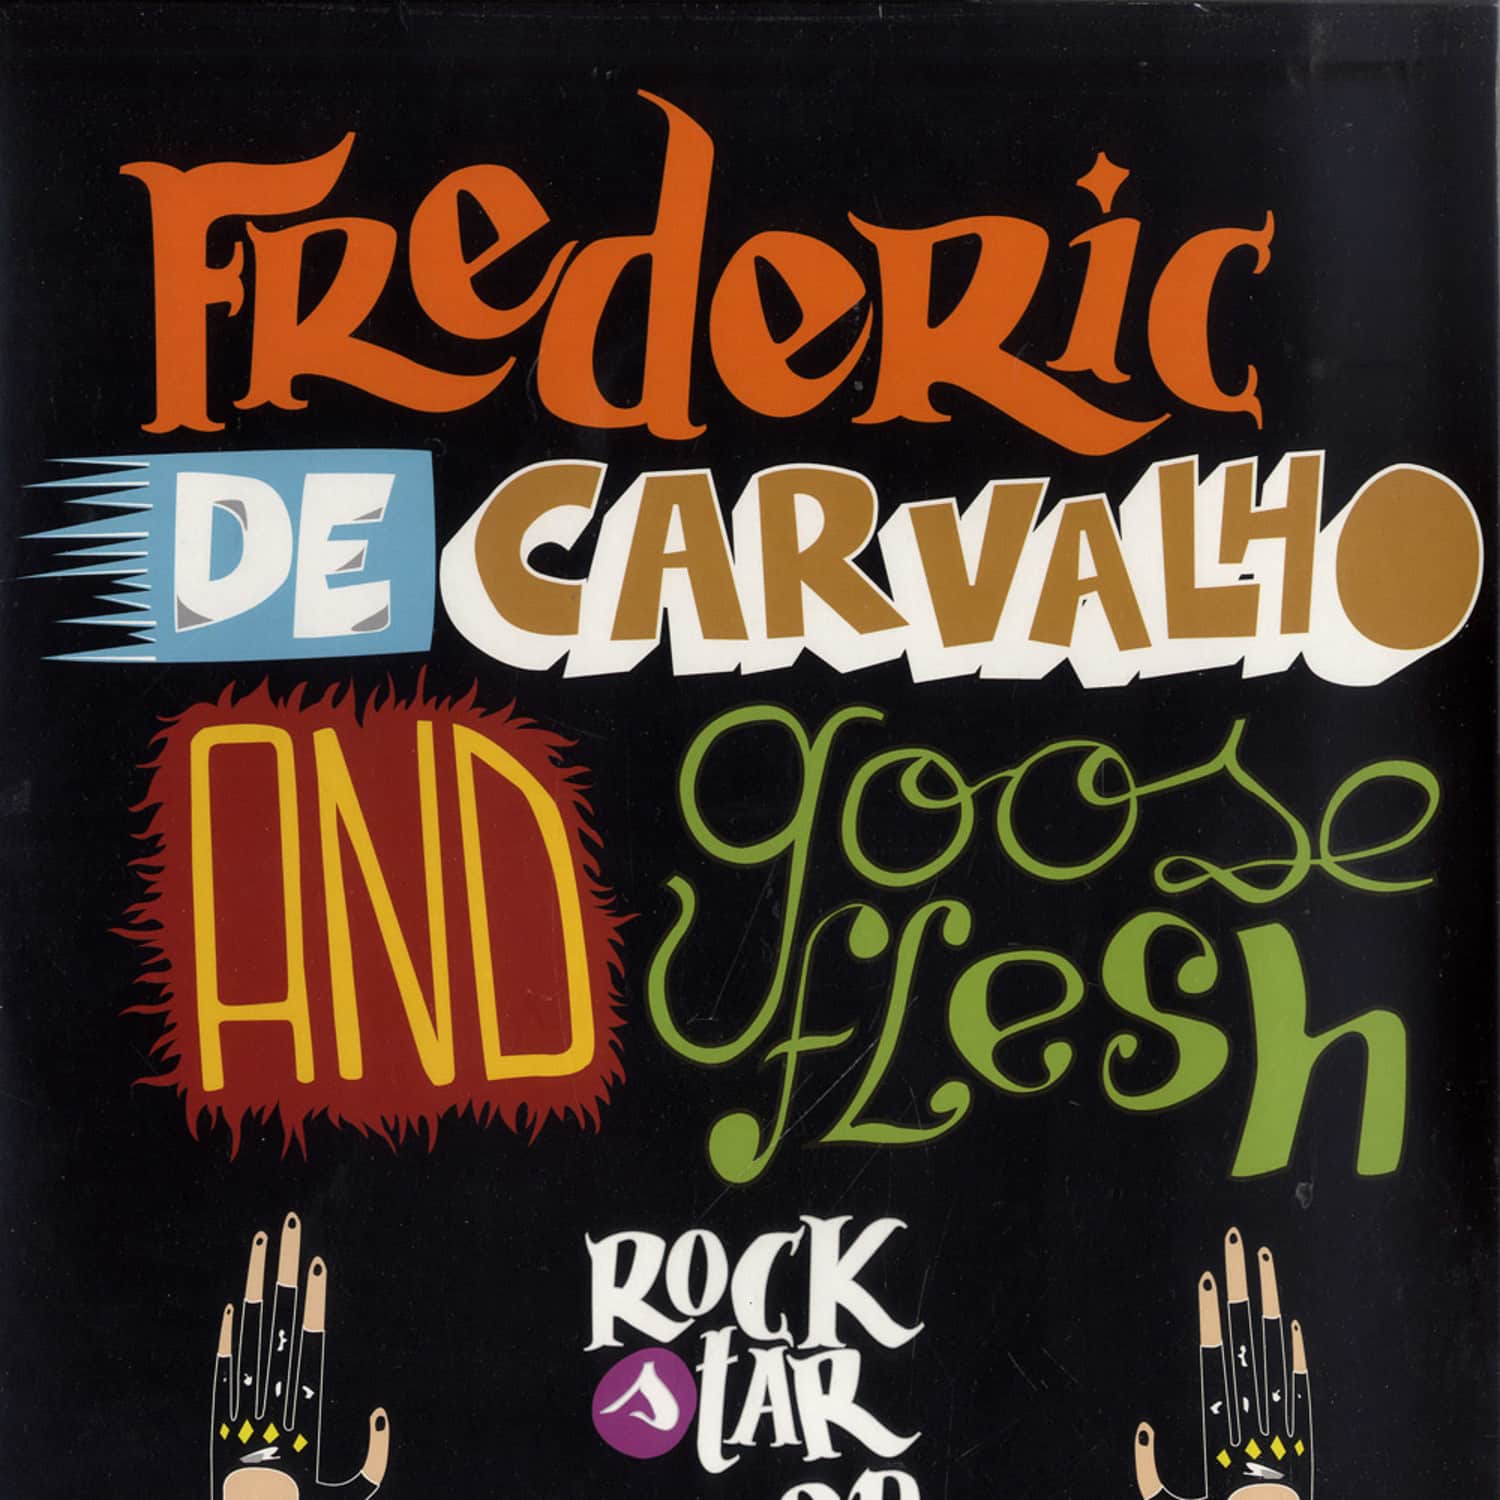 Frederic De Carvalho - ROCK STAR EP